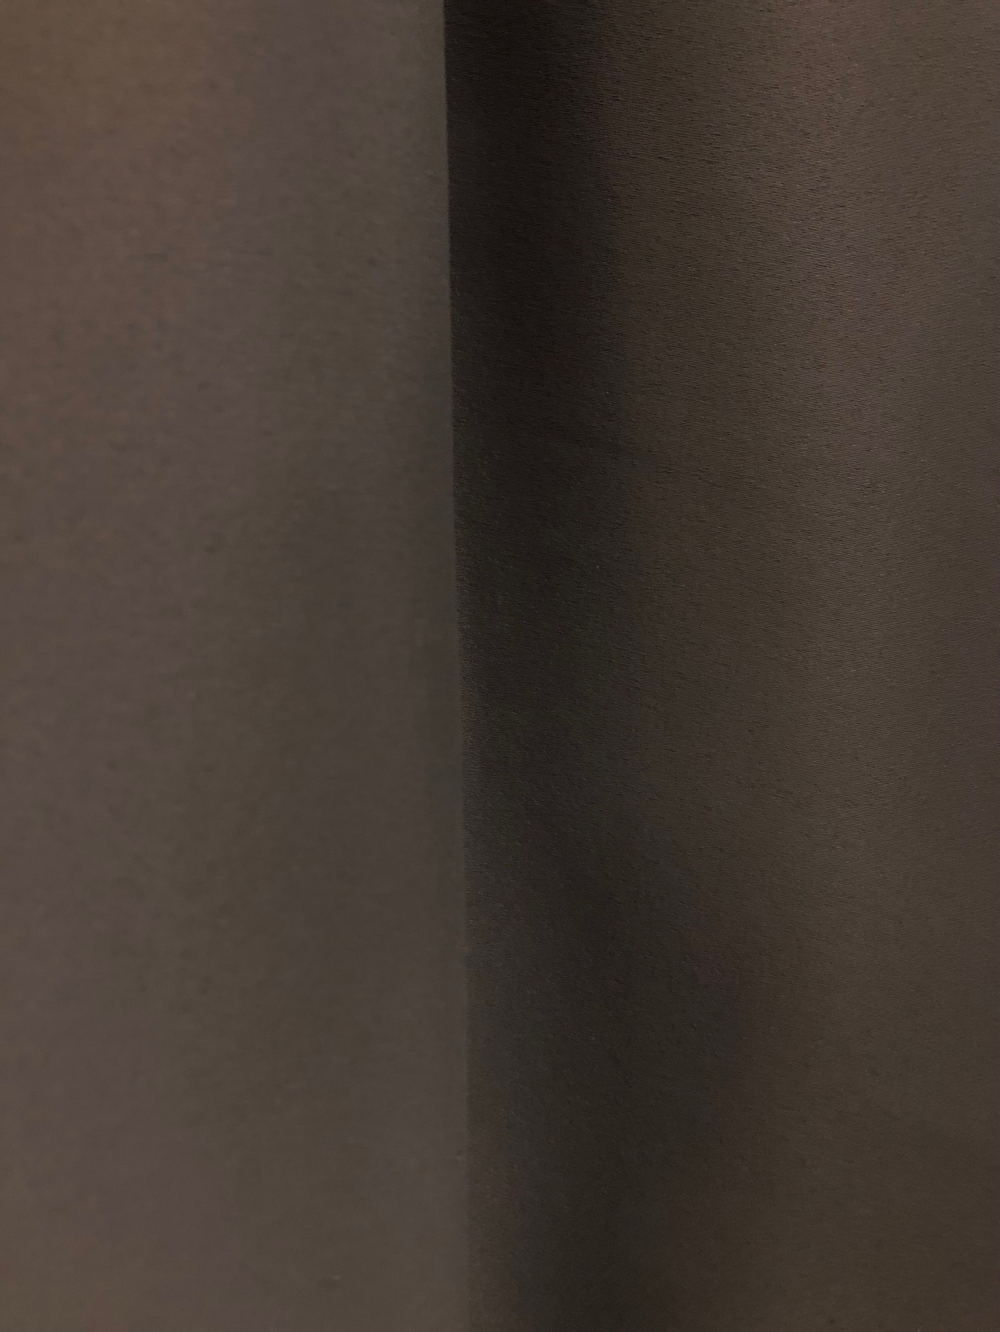 Ткань портьерная блэкаут, матовый, цвет тауповый темный, артикул 327432